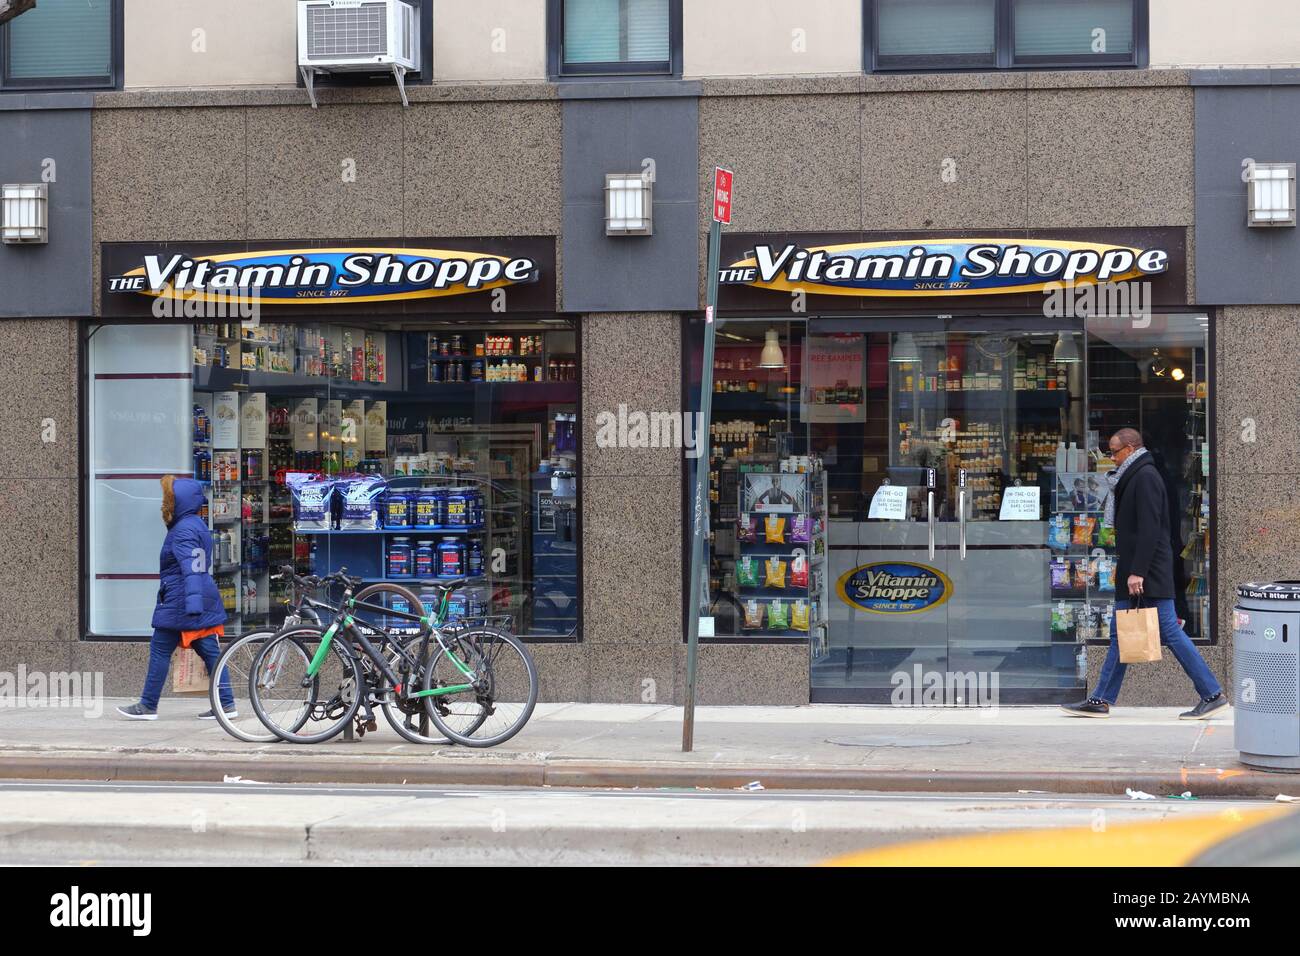 The Vitamin Shoppe, 257 8. Ave, New York. NYC-Schaufensterfoto eines Geschäfts mit Vitamin- und Nahrungsergänzungsmitteln im Chelsea-Viertel Manhat Stockfoto